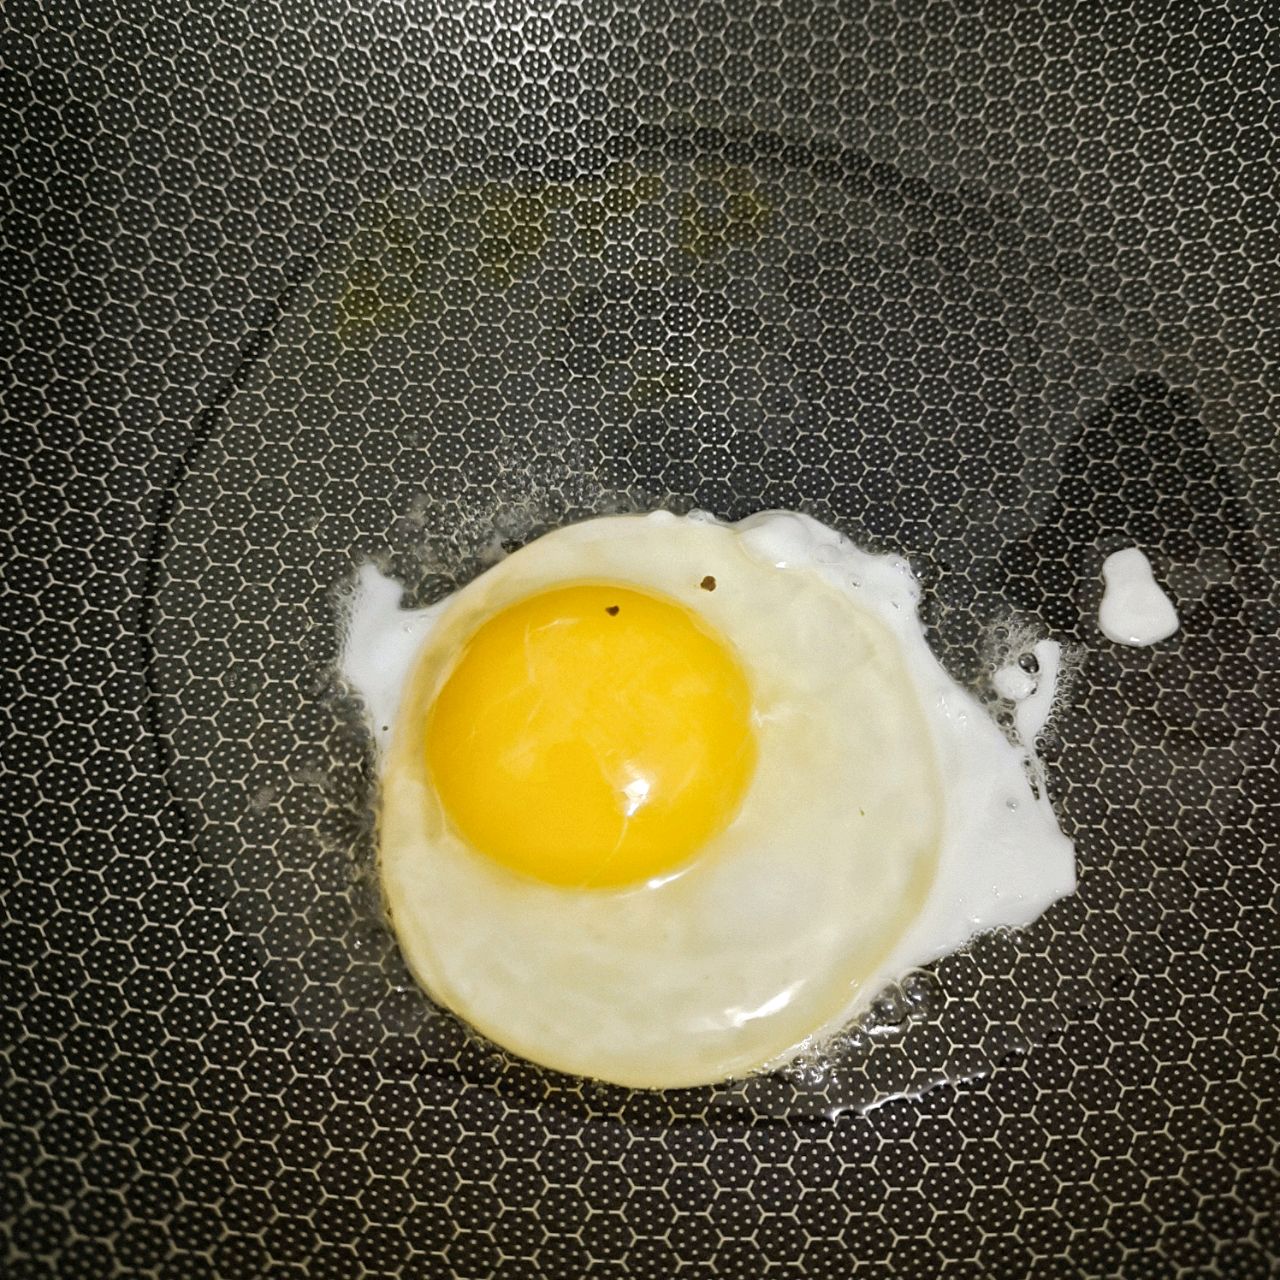 荷包蛋怎么做_荷包蛋的做法_豆果美食